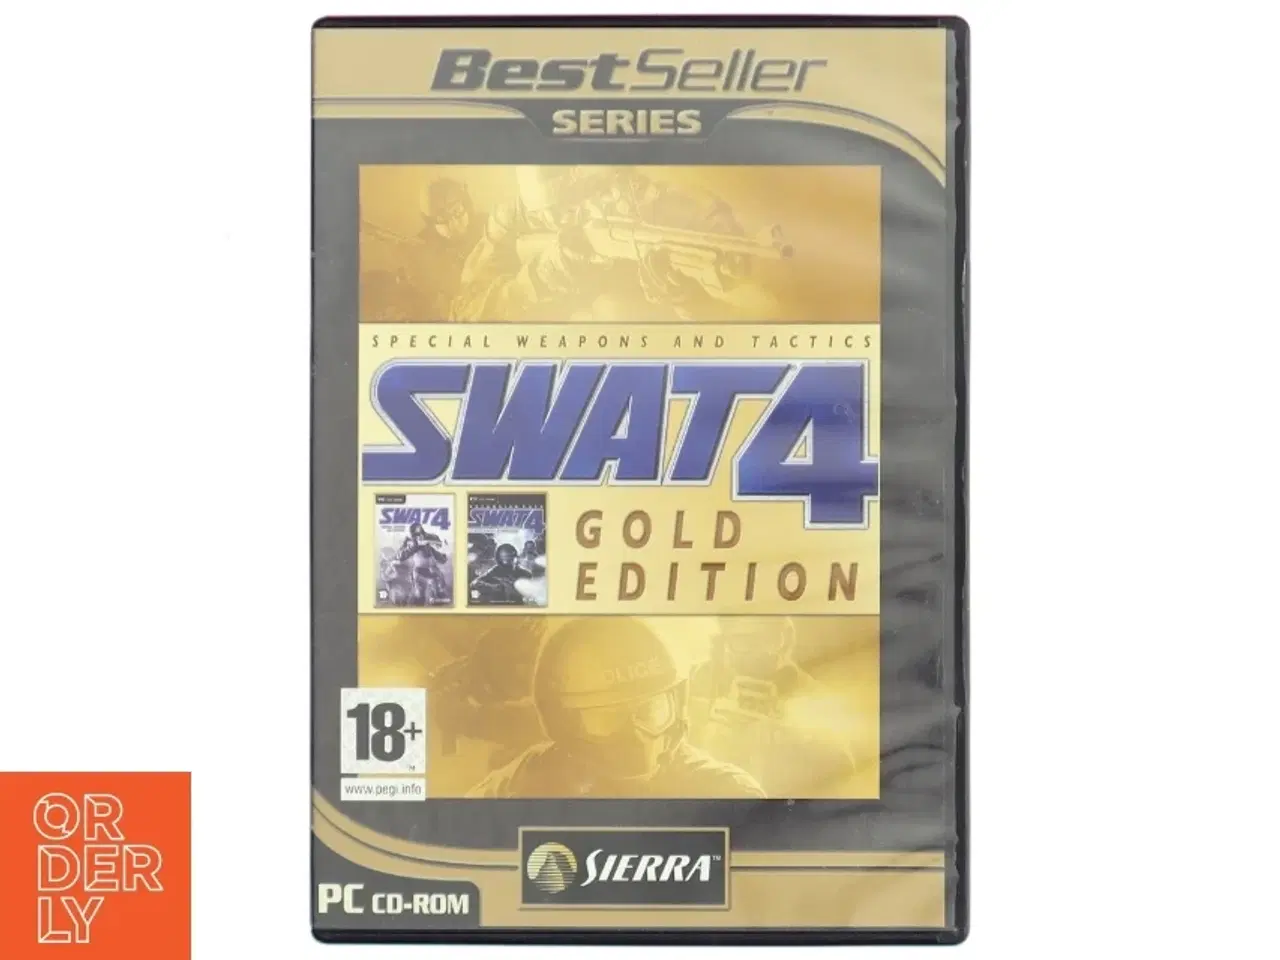 Billede 1 - SWAT 4 Gold Edition PC-spil fra Sierra